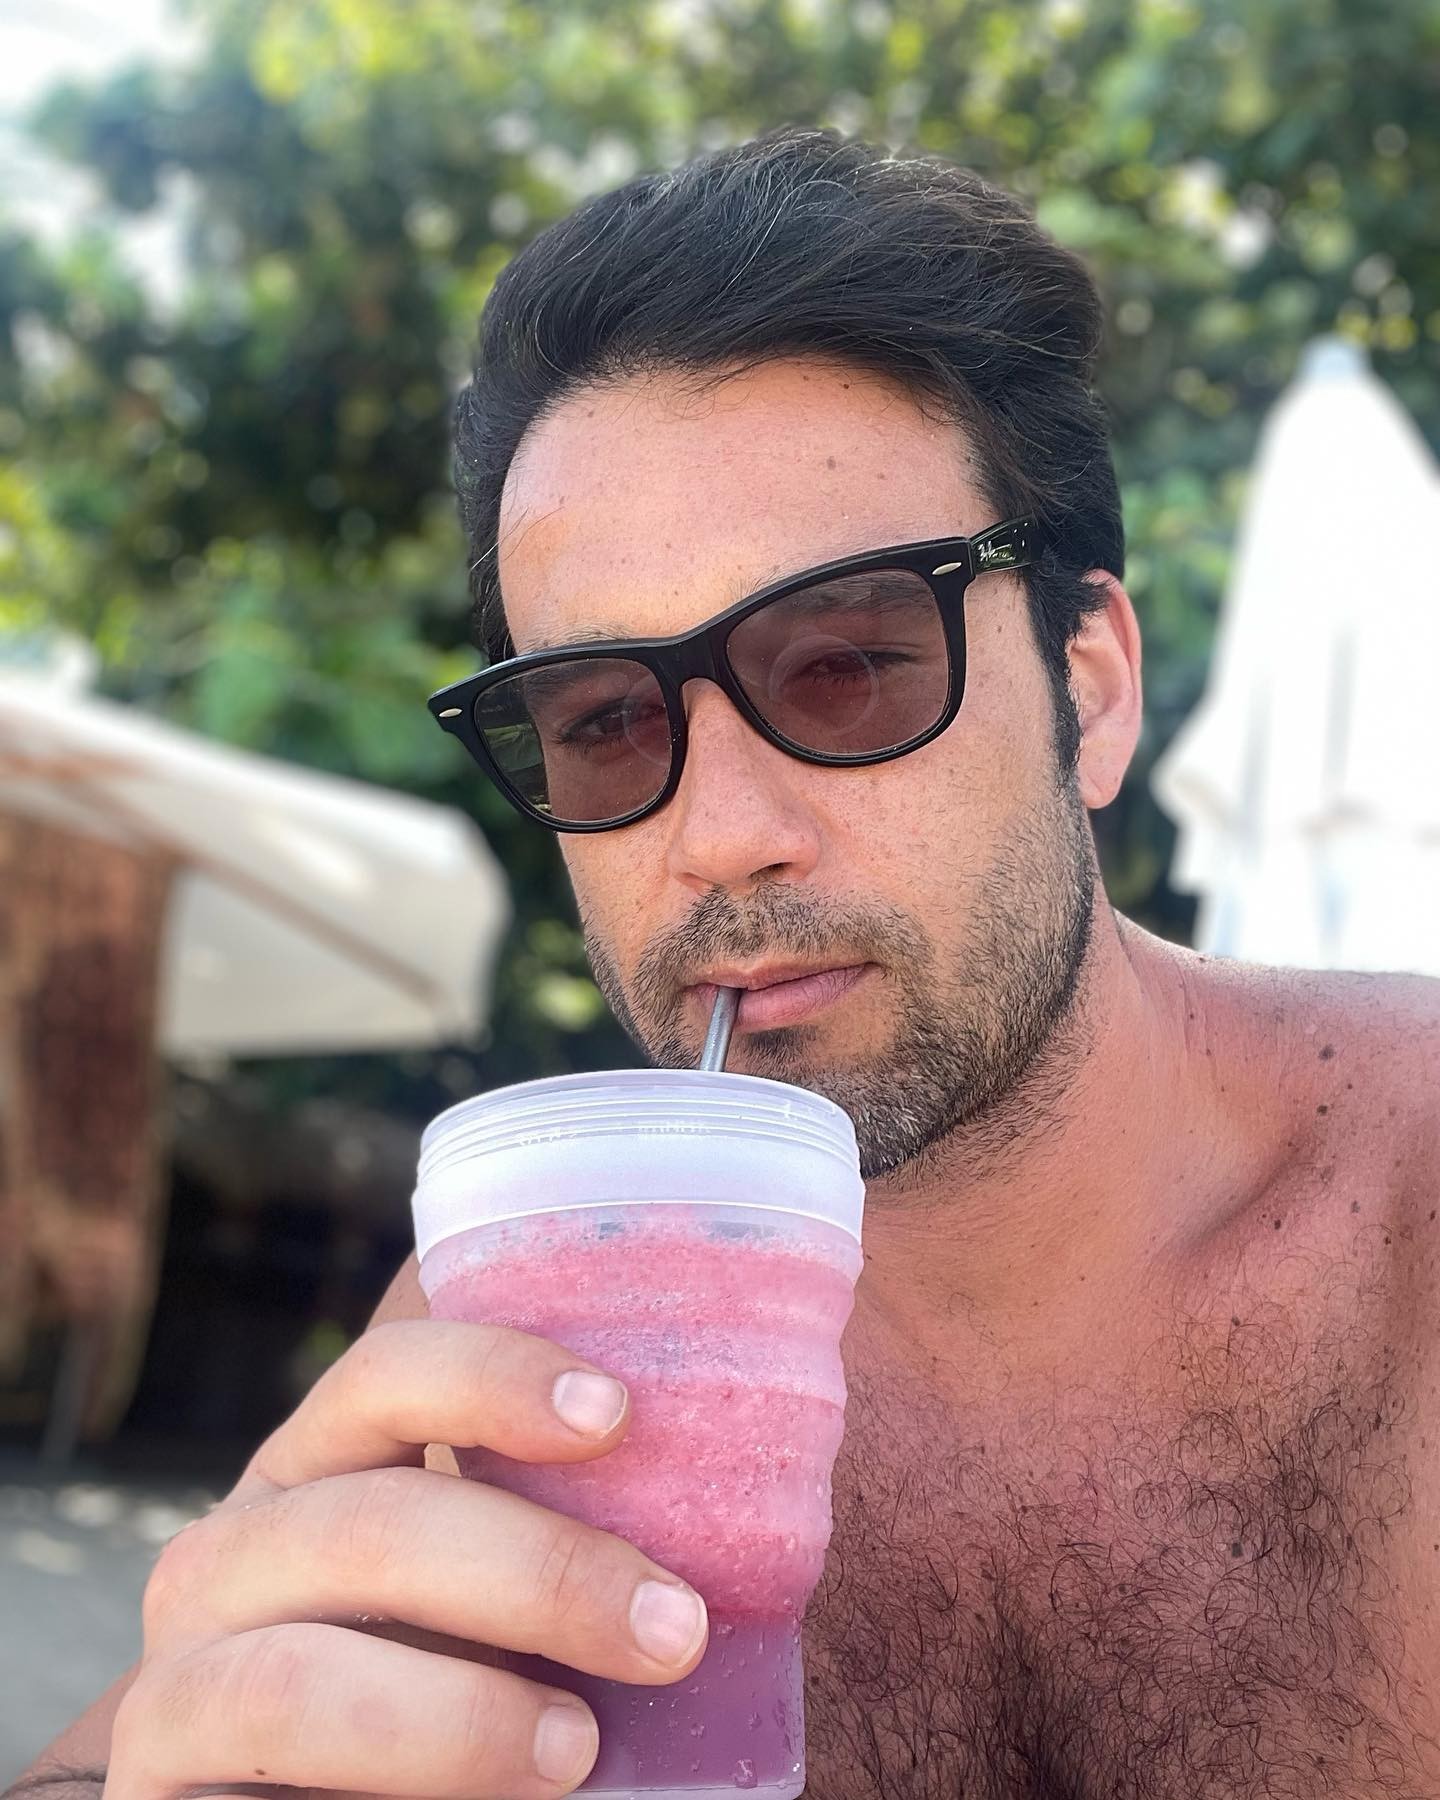 Sergio Marone posa na praia com canudo e copo reutilizáveis e manda recado sobre sustentabilidade (Foto: Reprodução/Instagram)